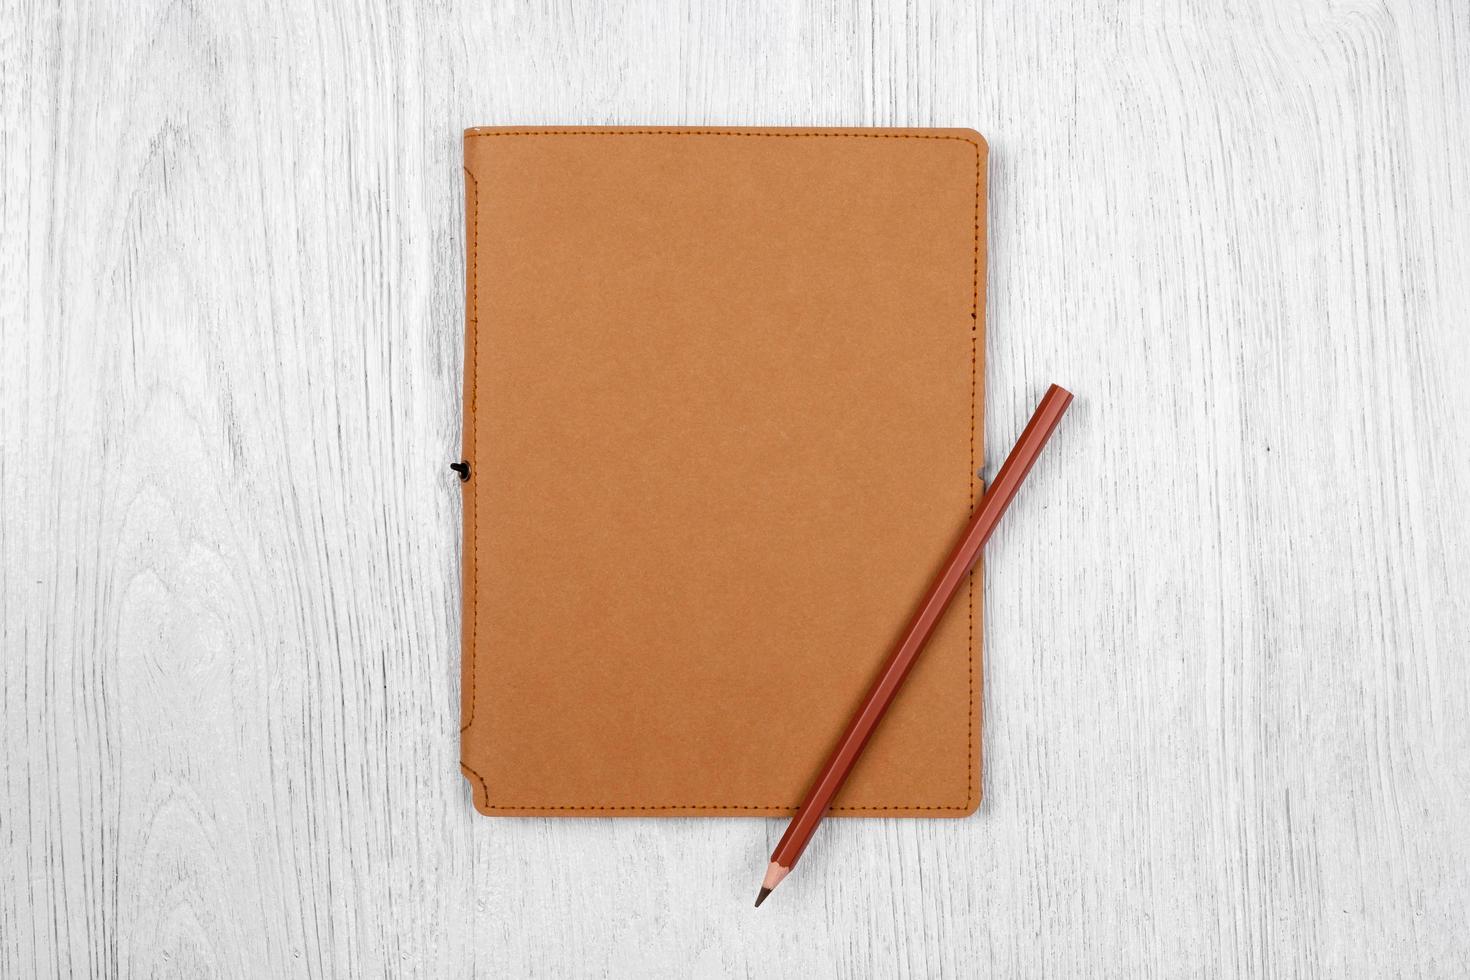 cahier marron et un crayon sur une table en bois blanc, vue de dessus photo